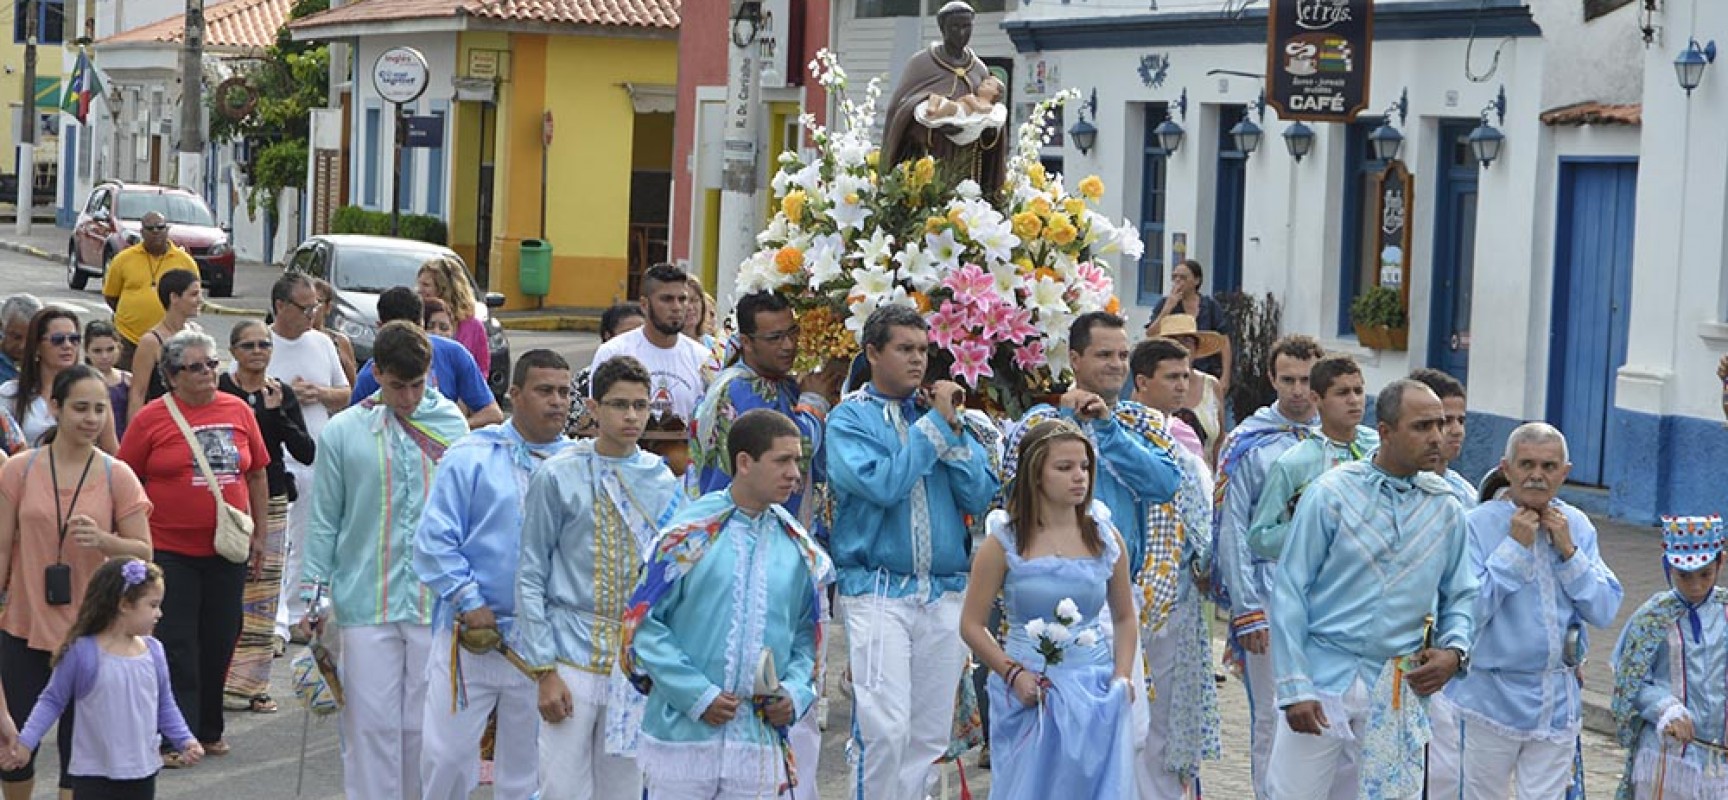 XV Semana da Cultura Caiçara começa na terça com grande programação em Ilhabela